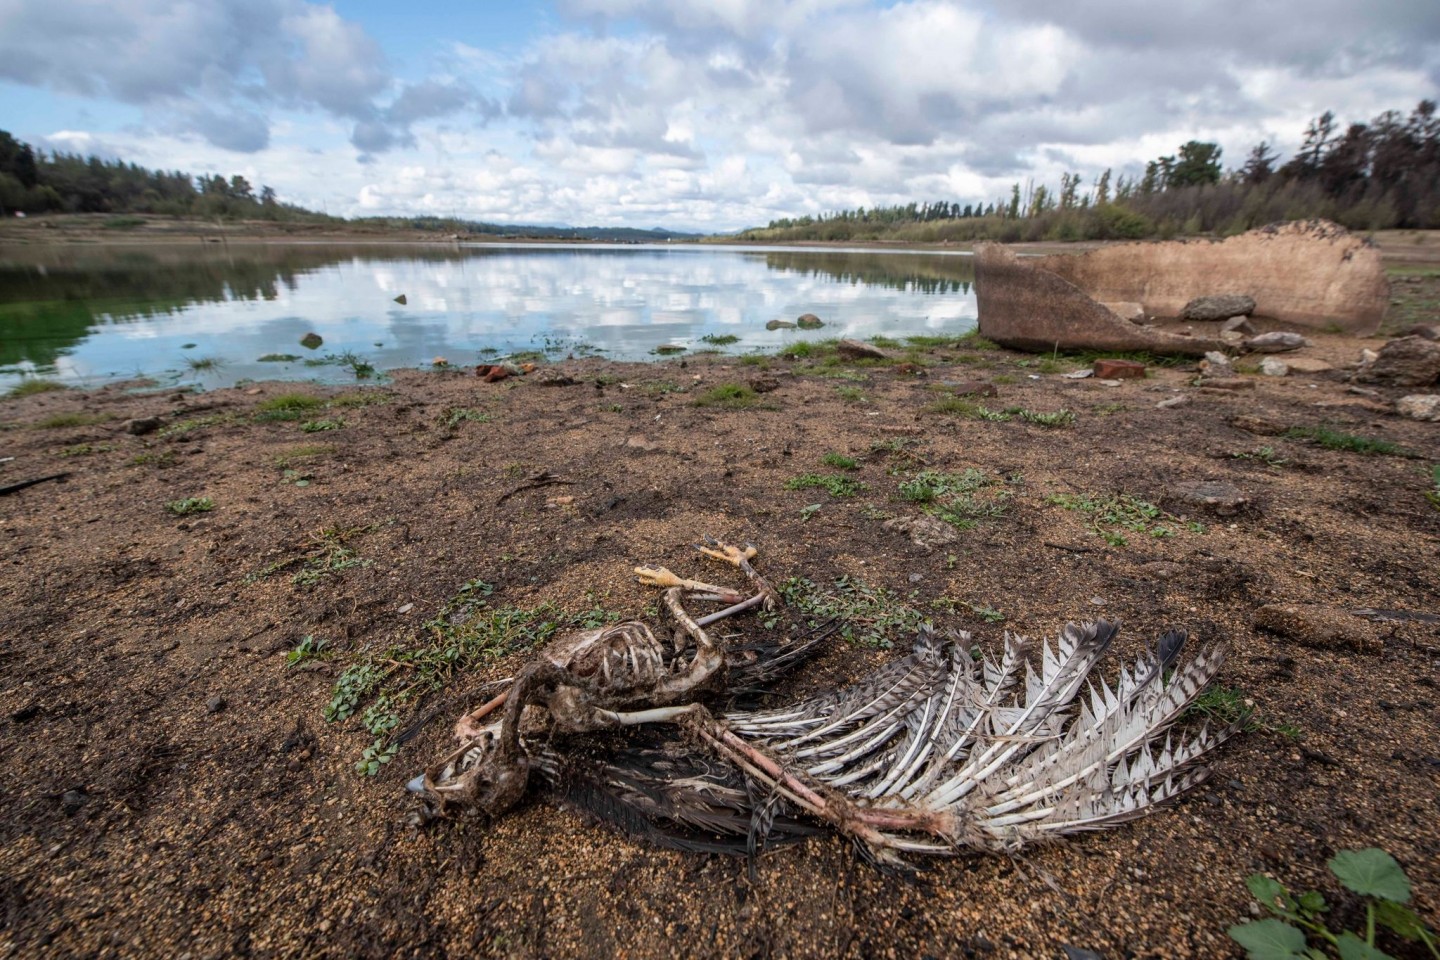 Am Ufer des Penuelas-Sees liegt nach einer Dürre ein toter Vogel. Der Weltklimarat führt die Folgen der menschengemachten Erderwärmung in seinem neuen Bericht drastischer vor Augen als je...